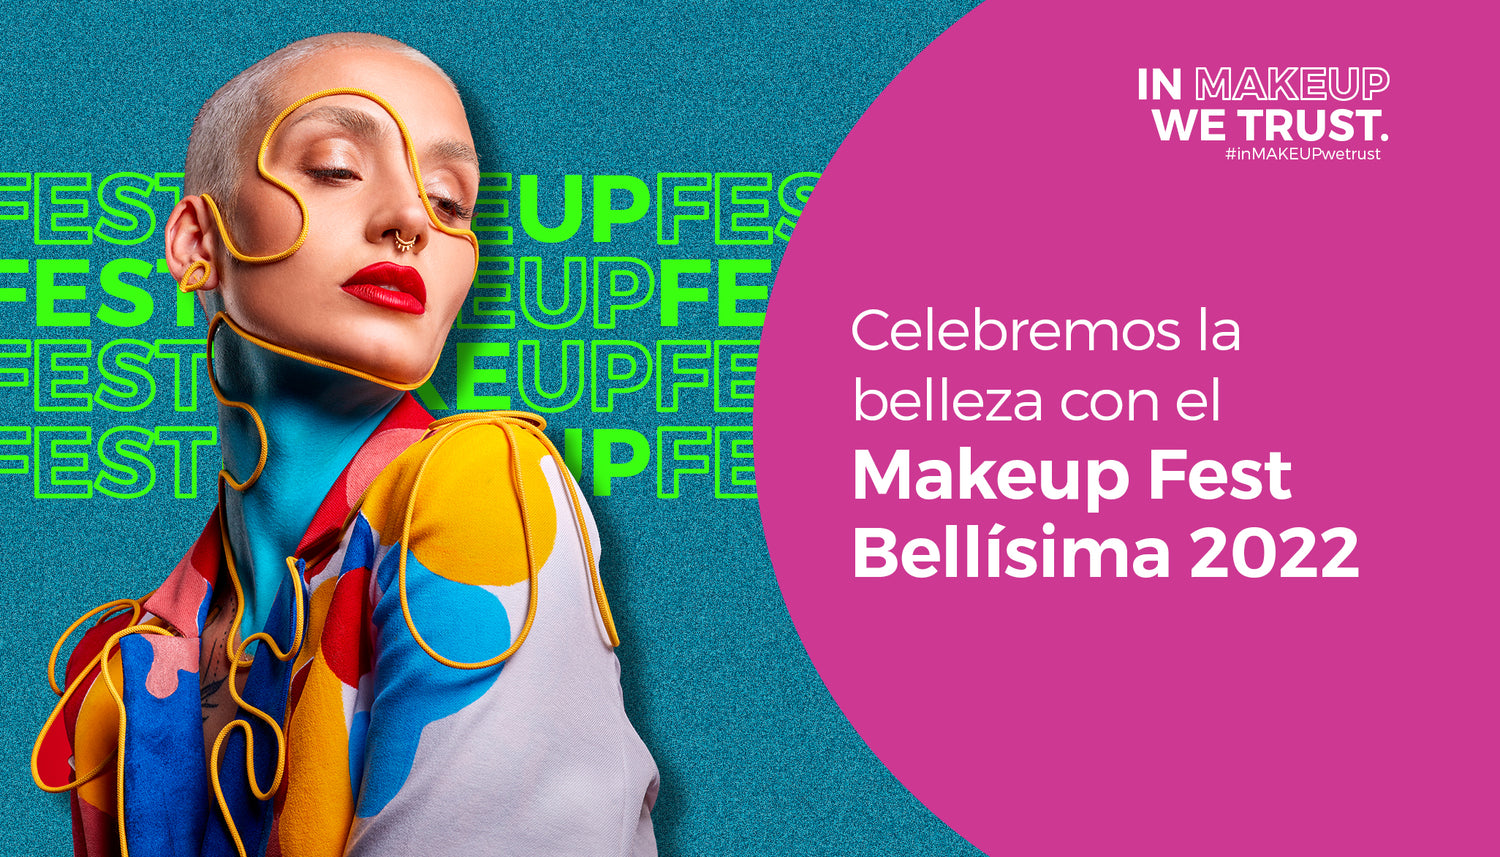 ¡Celebremos la belleza con el Makeup Fest Bellísima 2022!